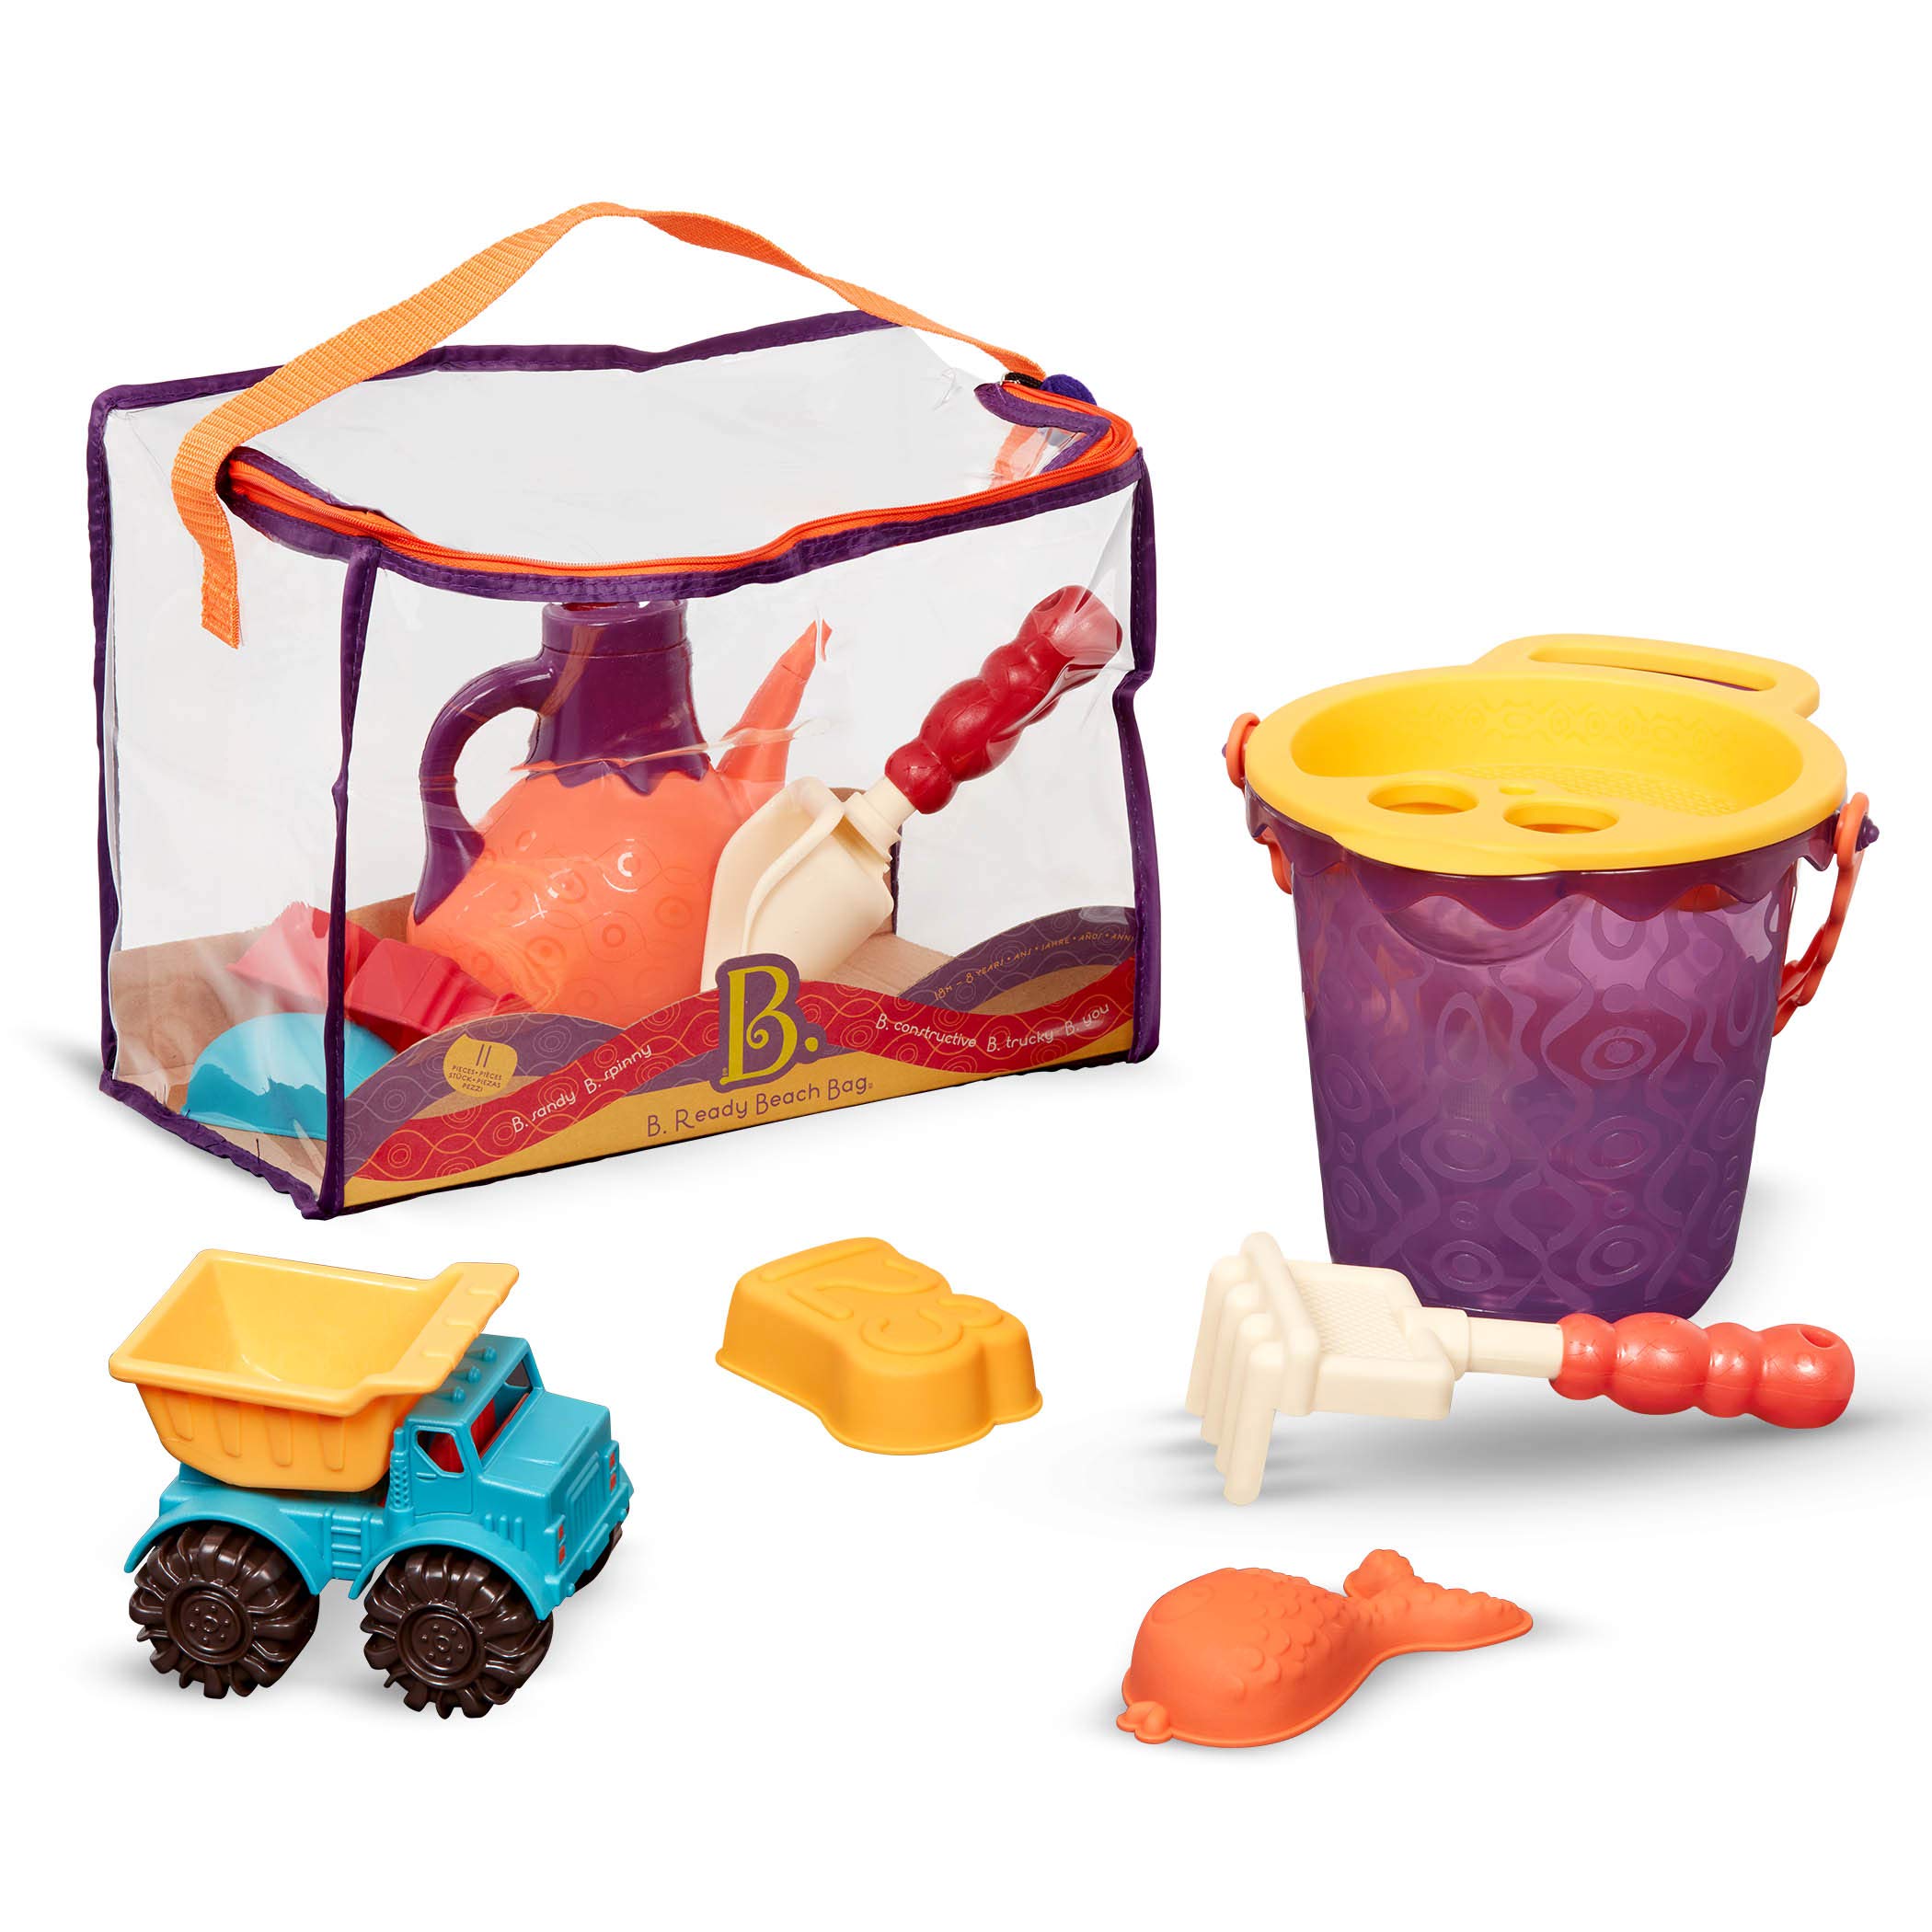 B. toys Sandspielzeug 11 Teile mit Tasche –Sandkasten Spielzeug, Strand, Spielplatz mit Eimer, Schaufel, Sandförmchen, Kipper – Spielzeug ab 18 Monaten